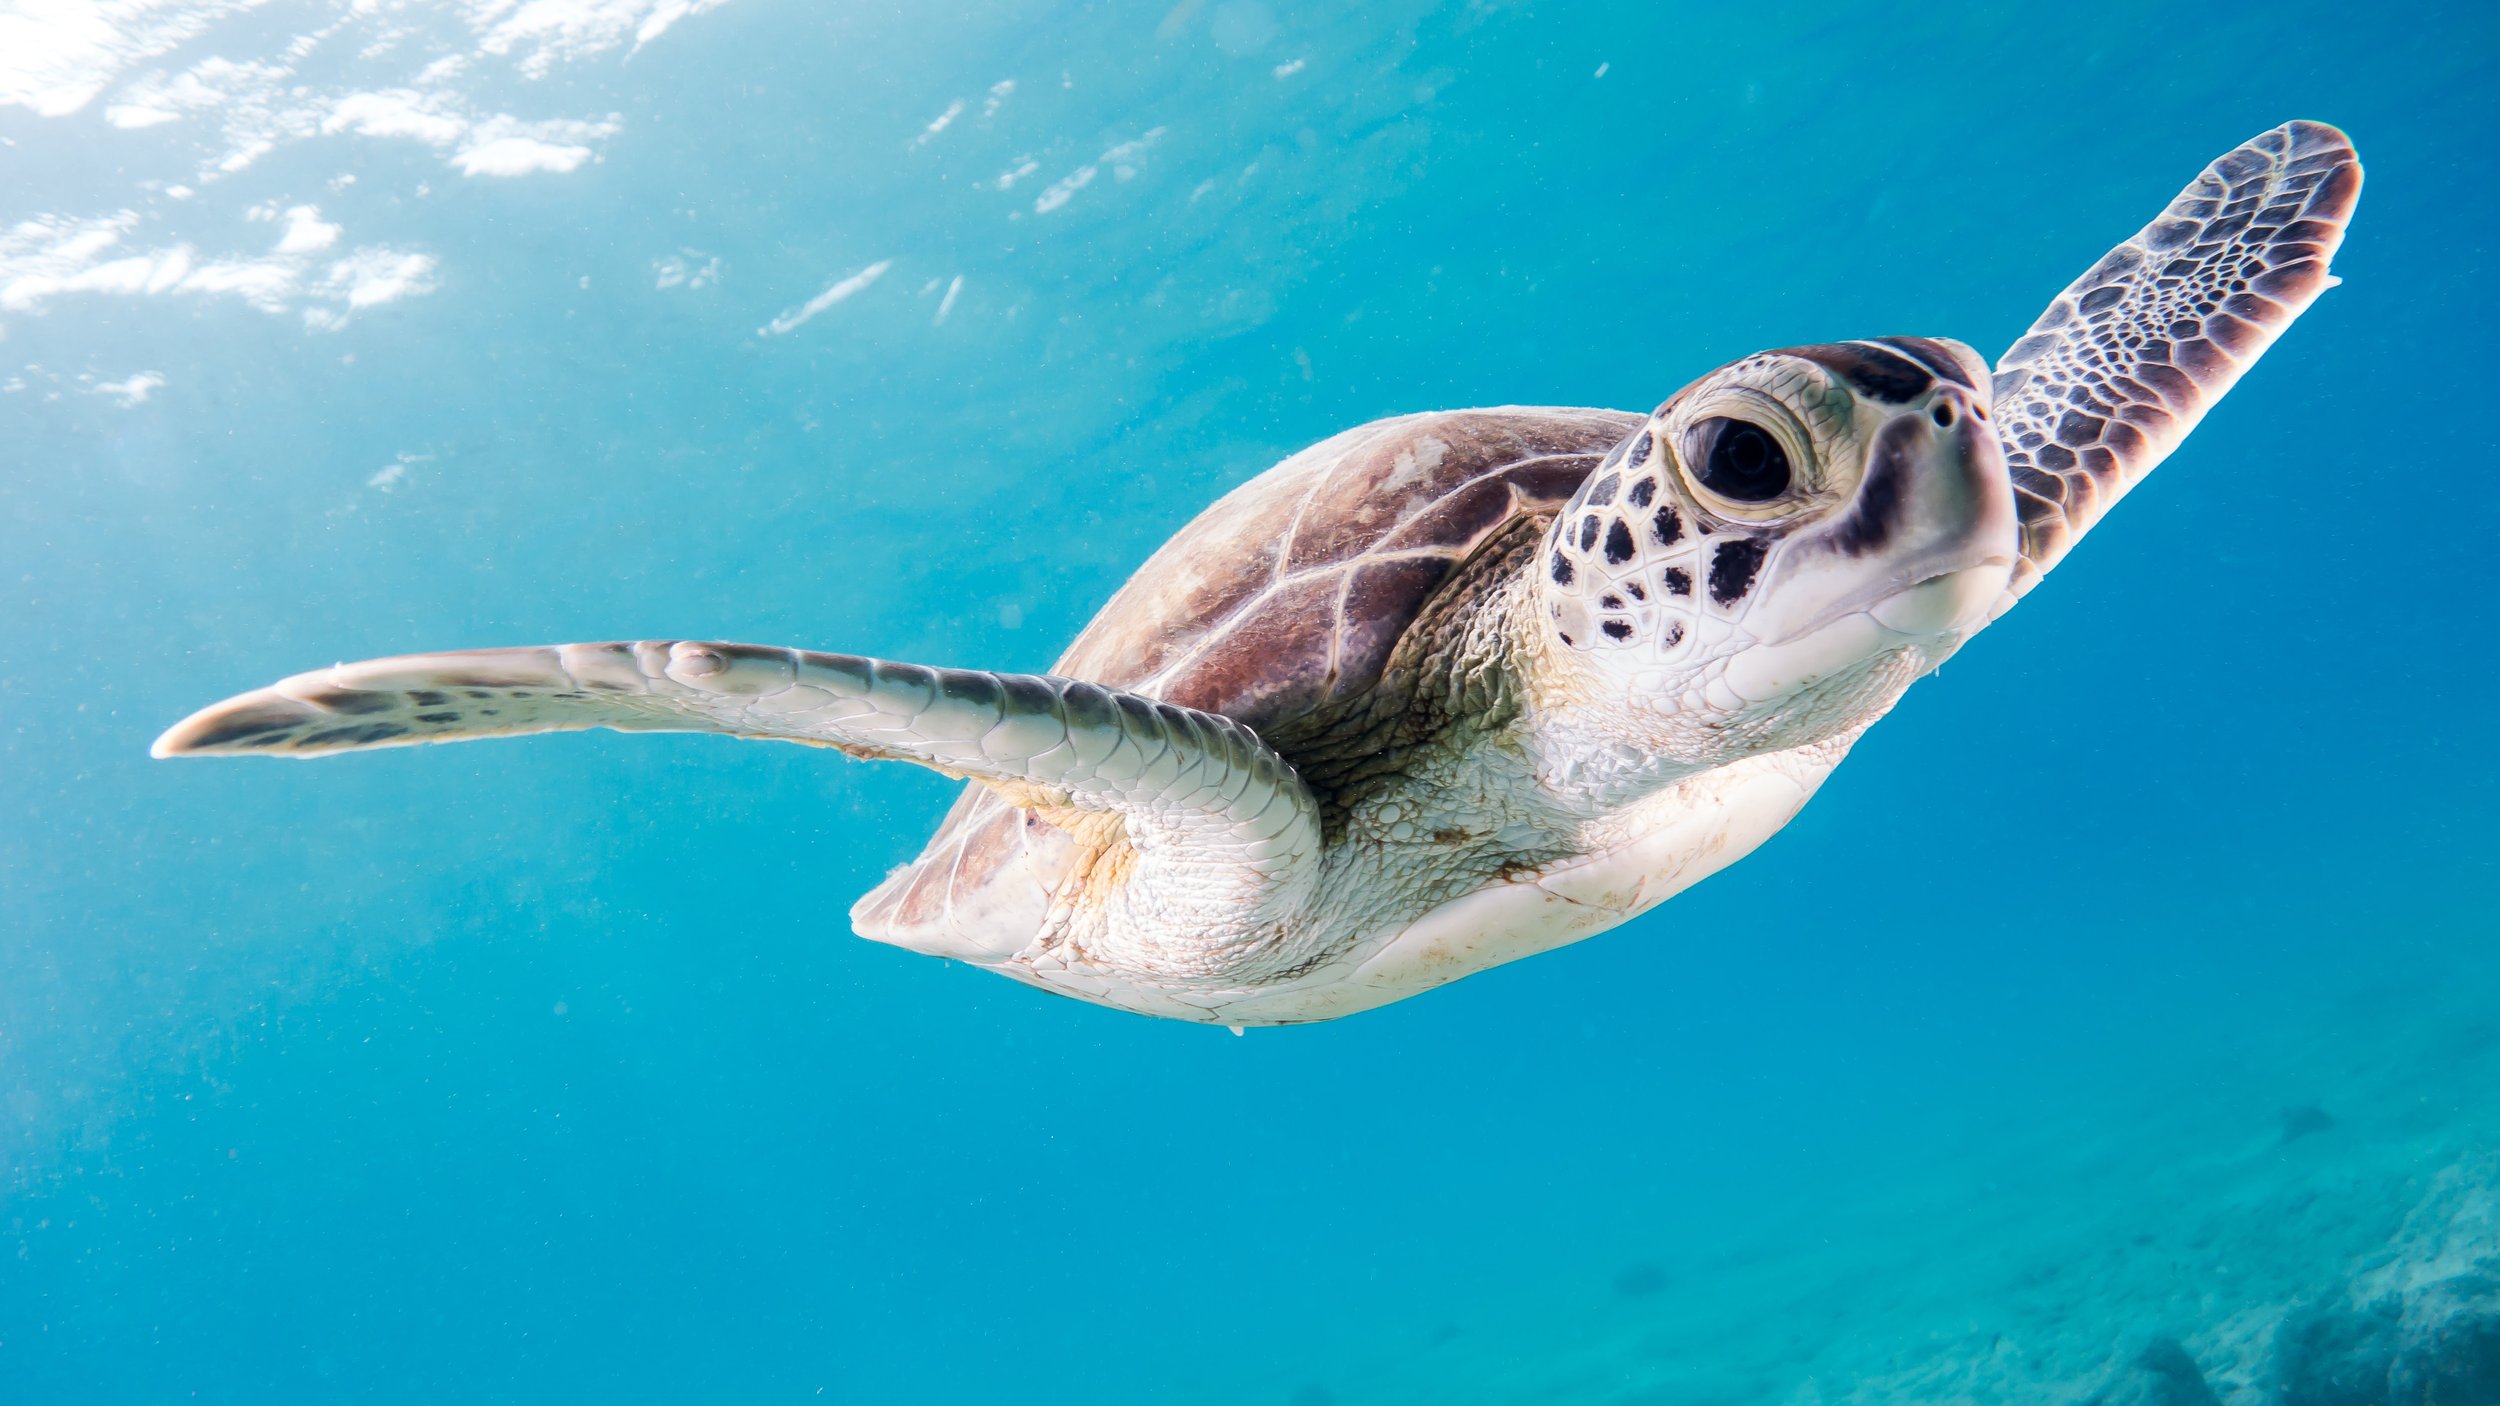 sea-turtle-underwater-swimming.jpg